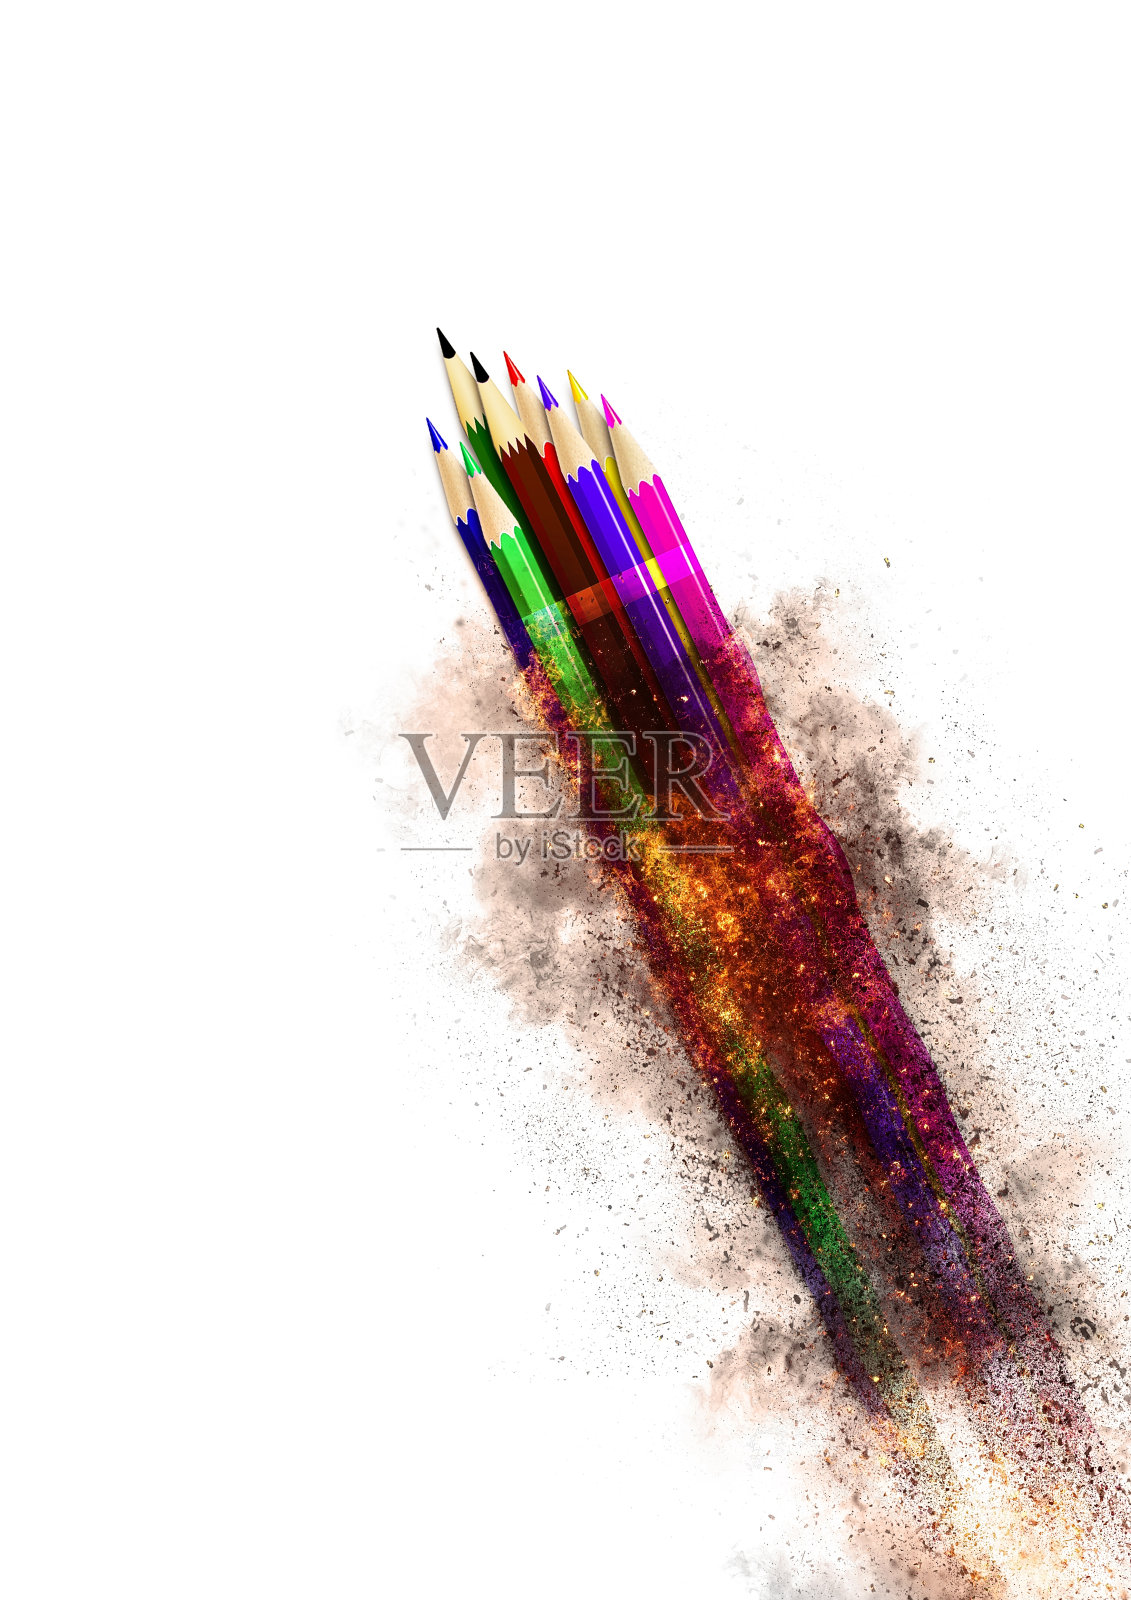 发射一枚与彩色铅笔捆在一起的抽象火箭照片摄影图片